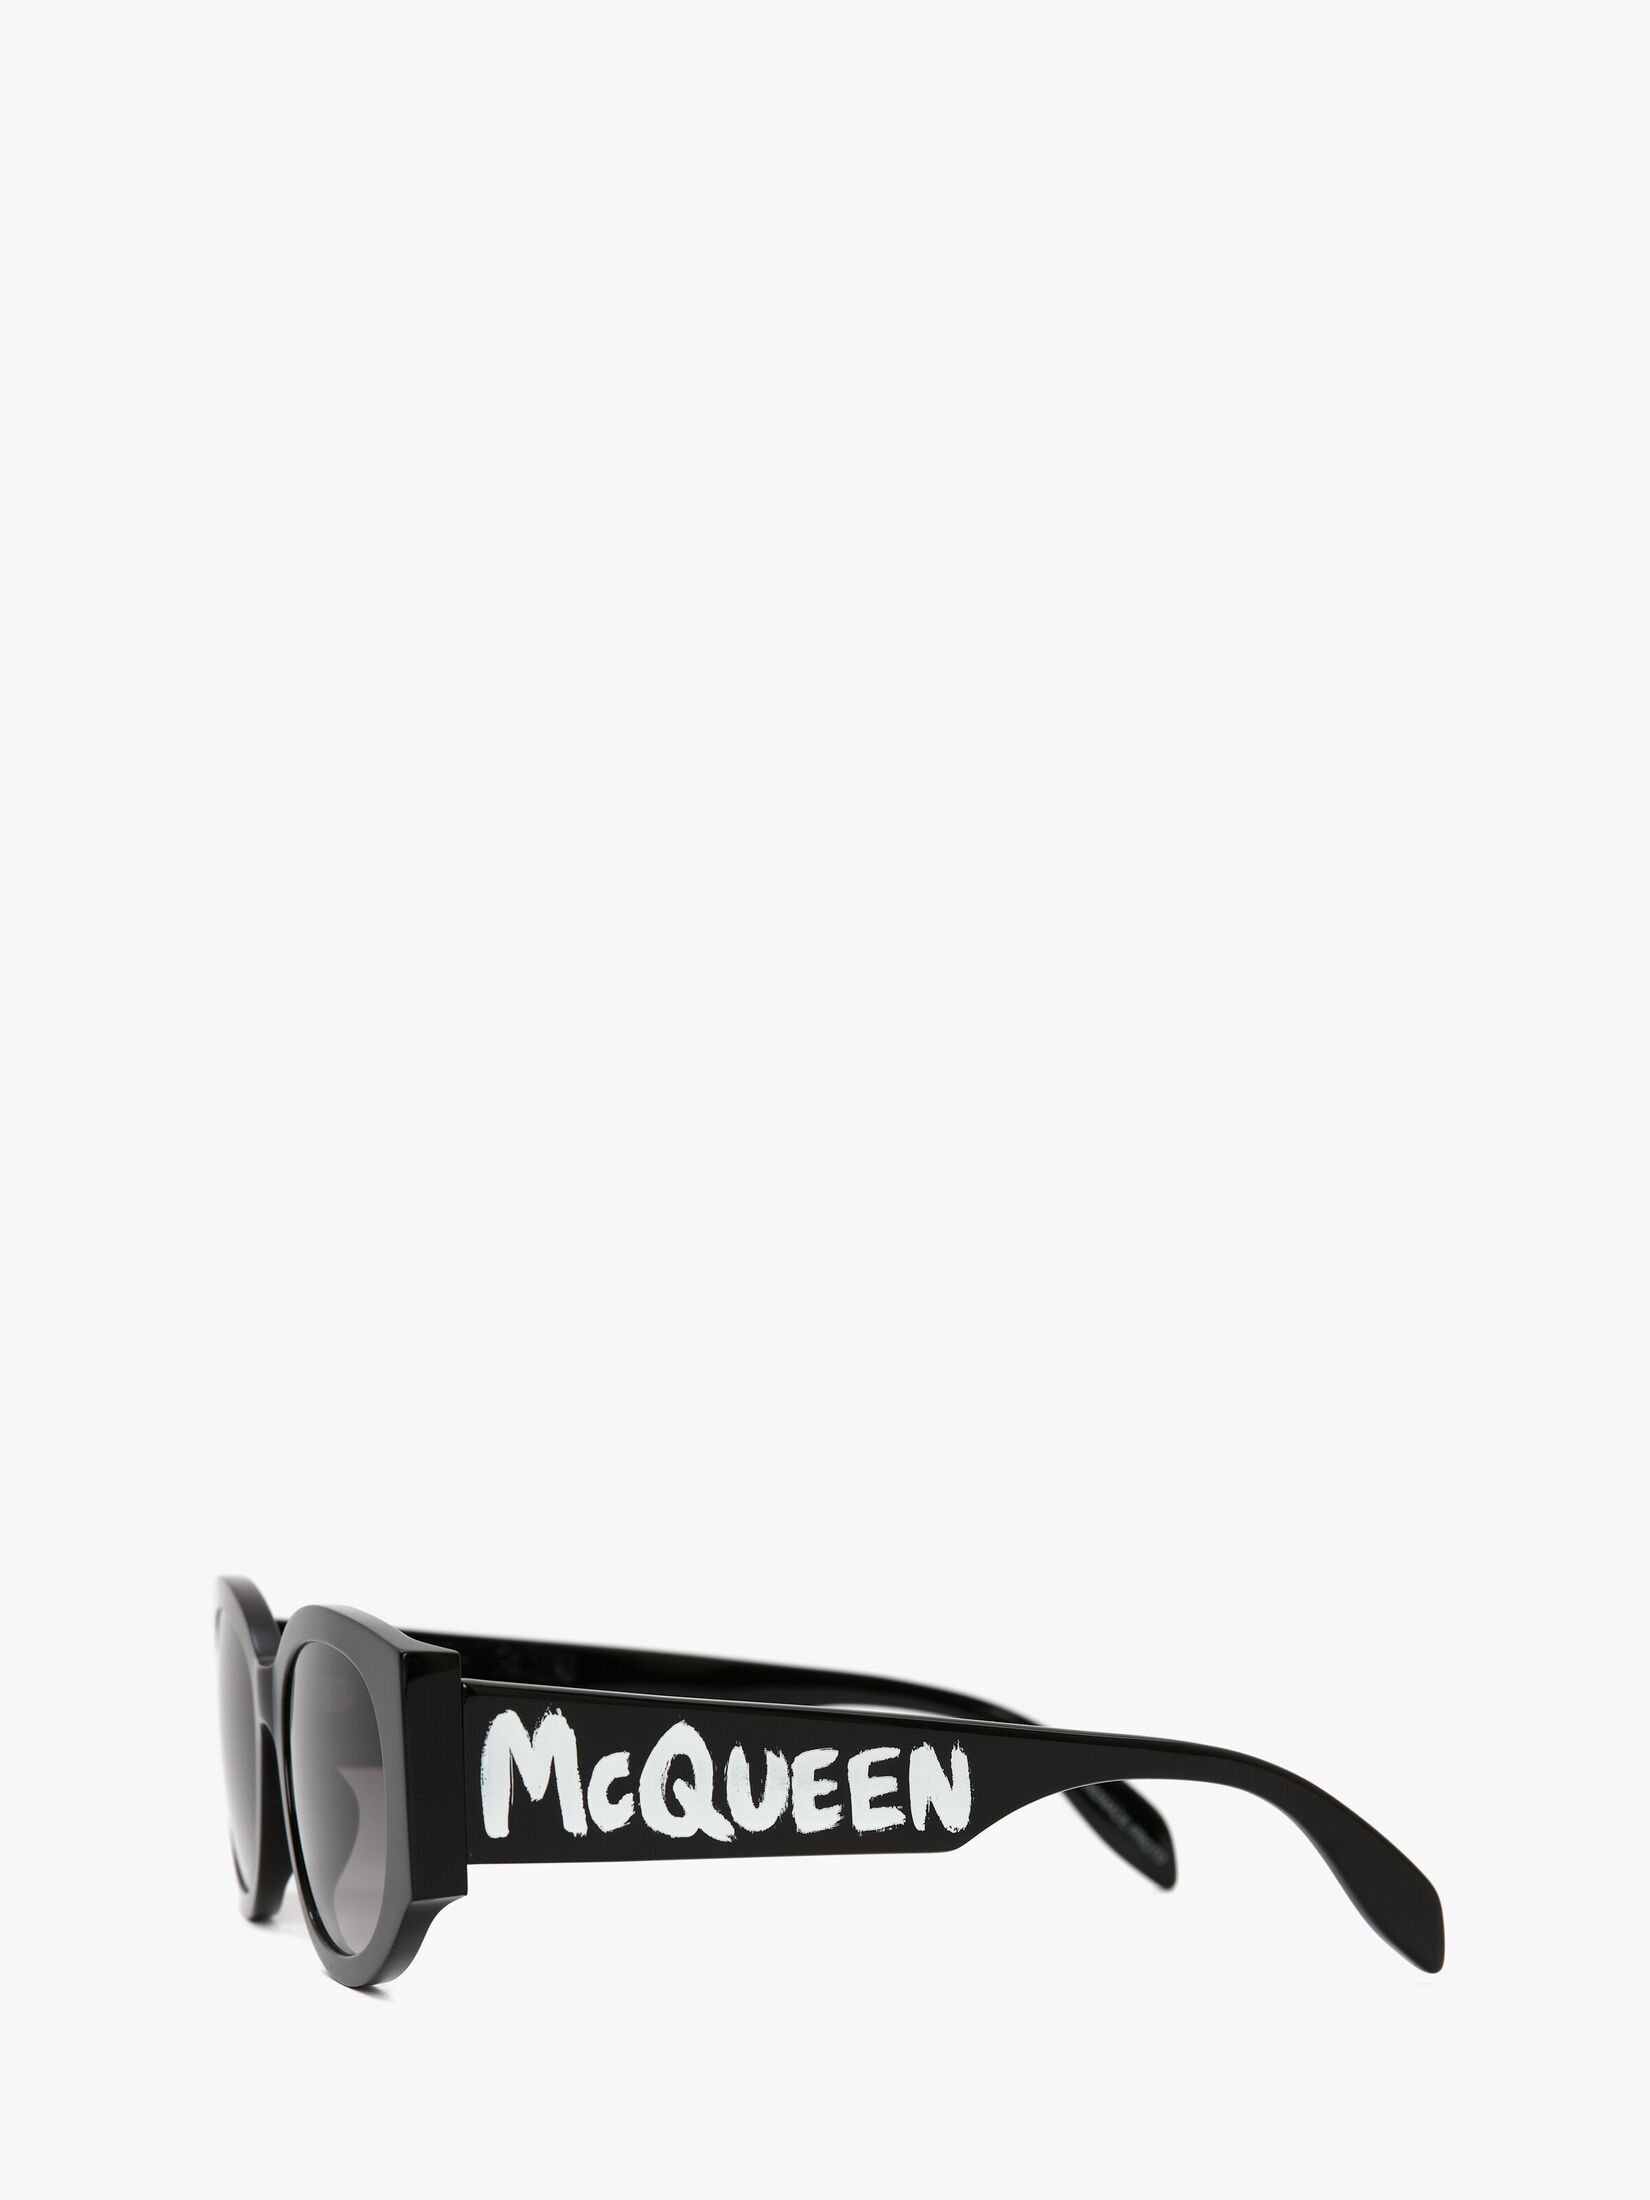 McQueen Graffiti Oval Sunglasses